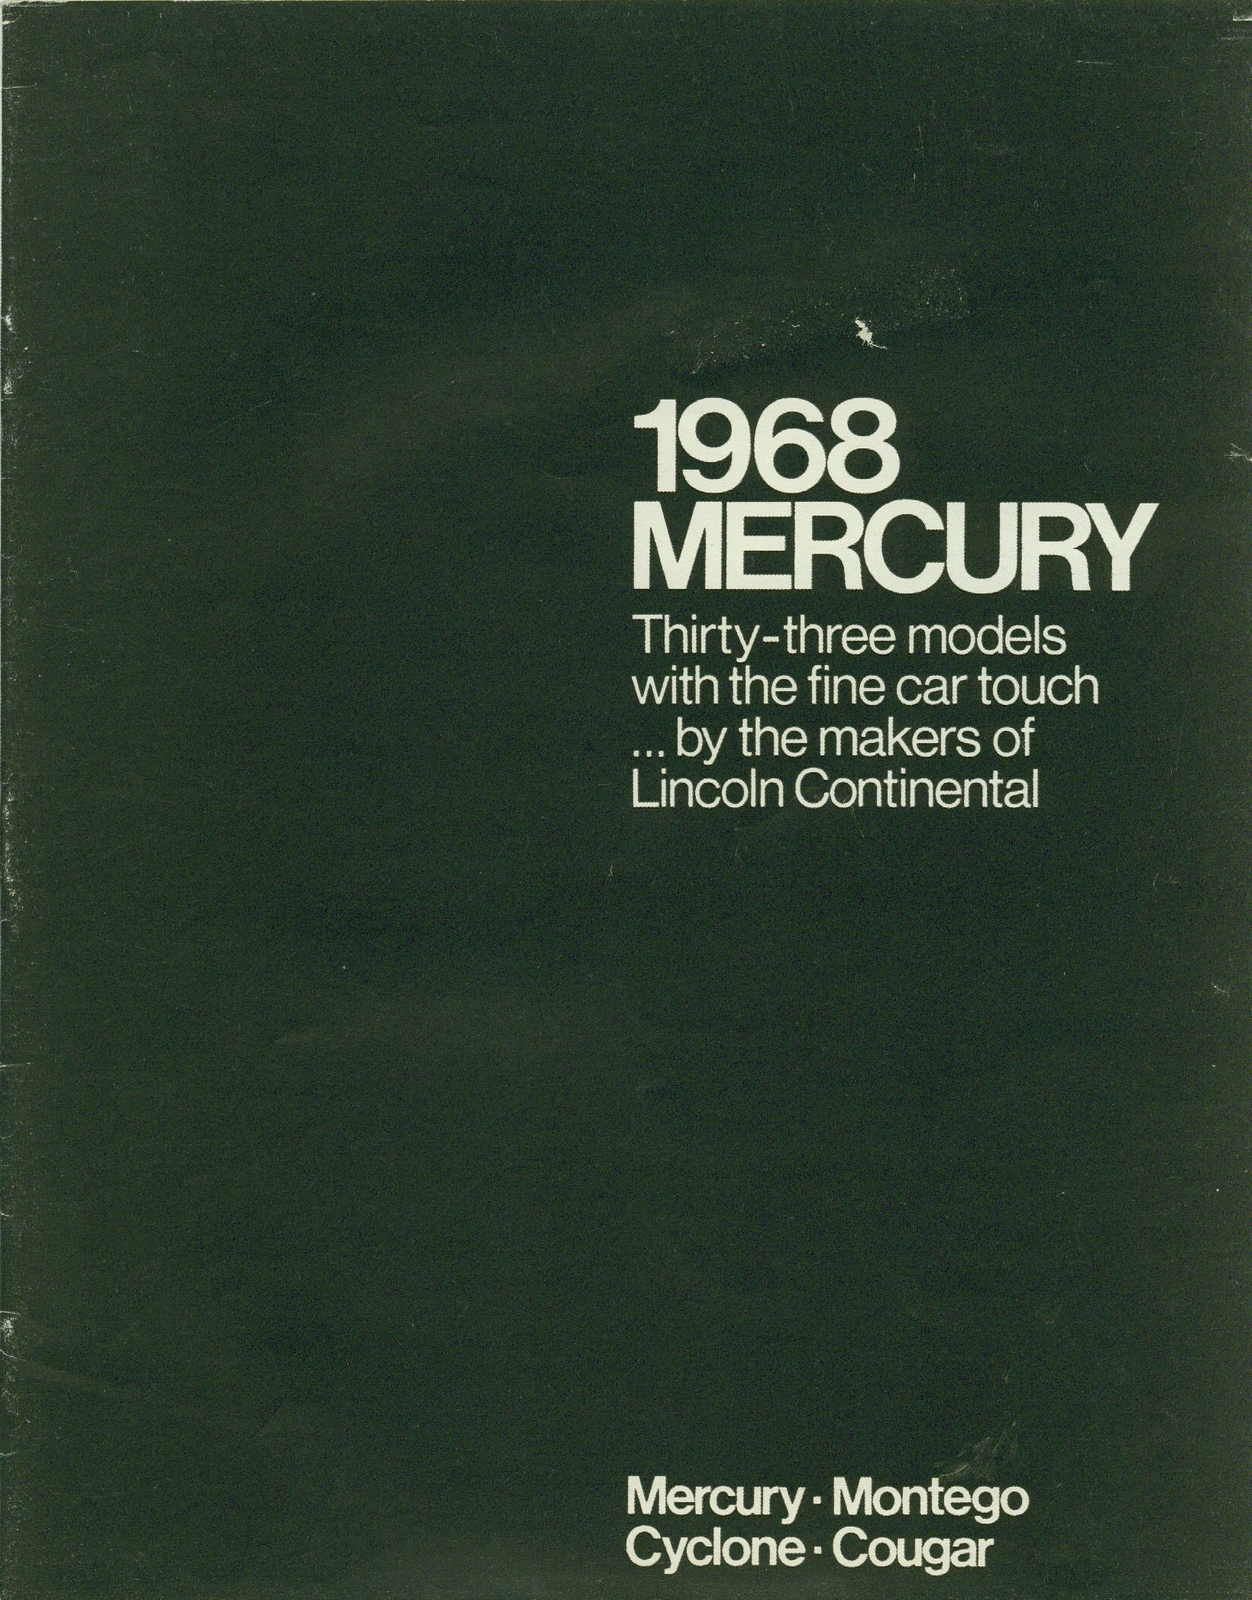 n_1968 Mercury Full Line-00.jpg